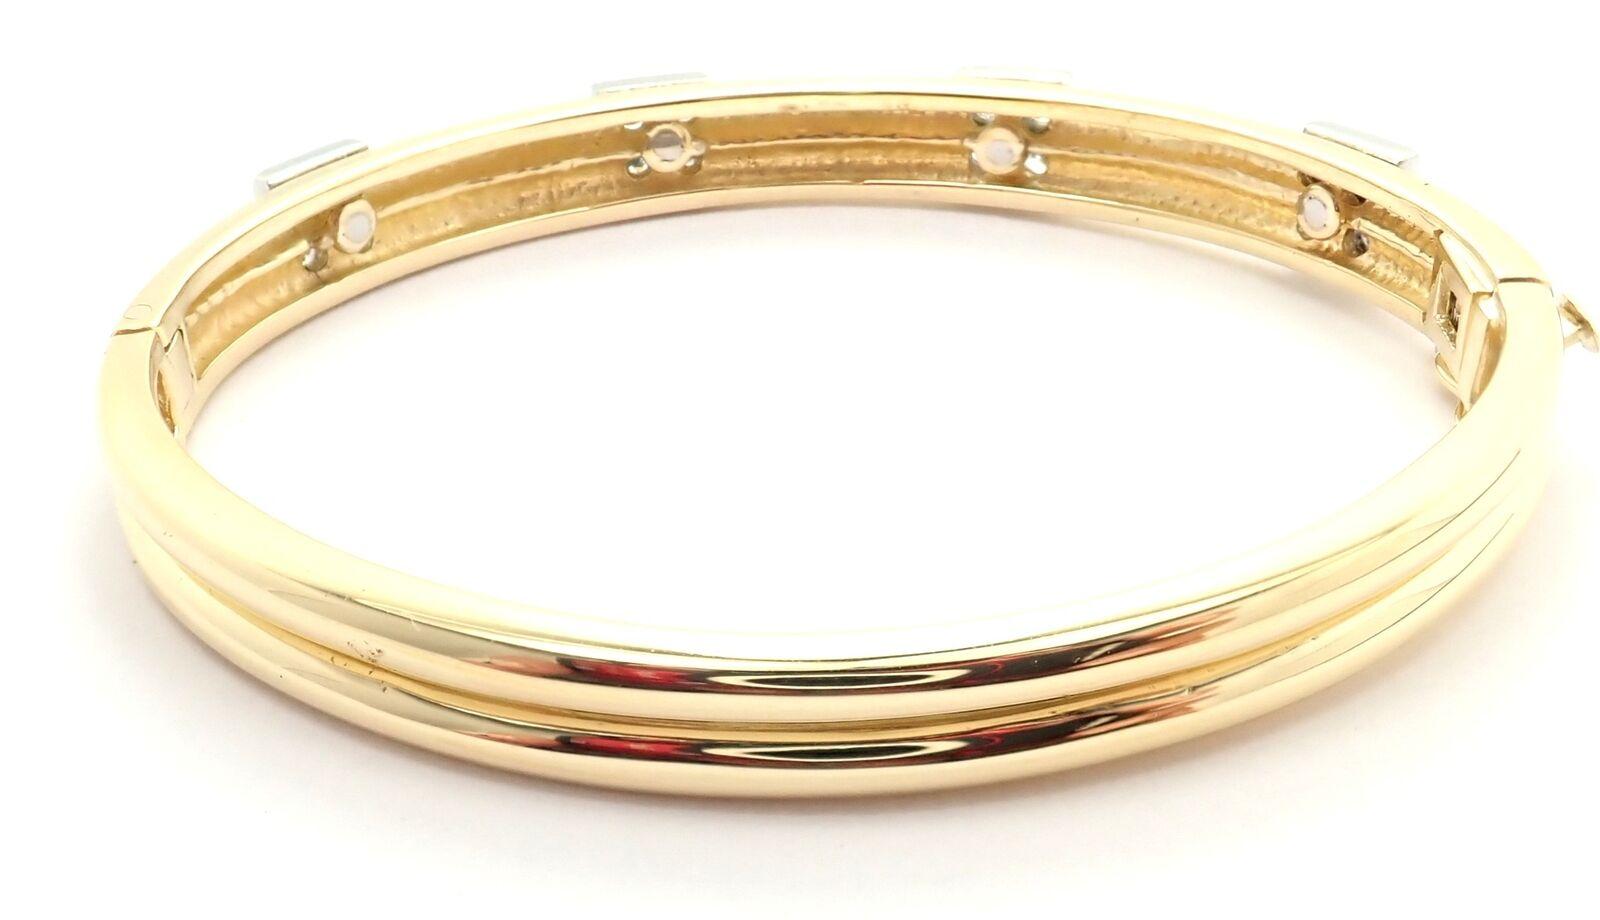 Vintage Tiffany & Co. Bracelet en or jaune 18k avec diamants. 
Avec 16 diamants ronds brillants de pureté VS1 et de couleur E. Poids total d'environ 1,12 ct
Détails :
Longueur : 6.5